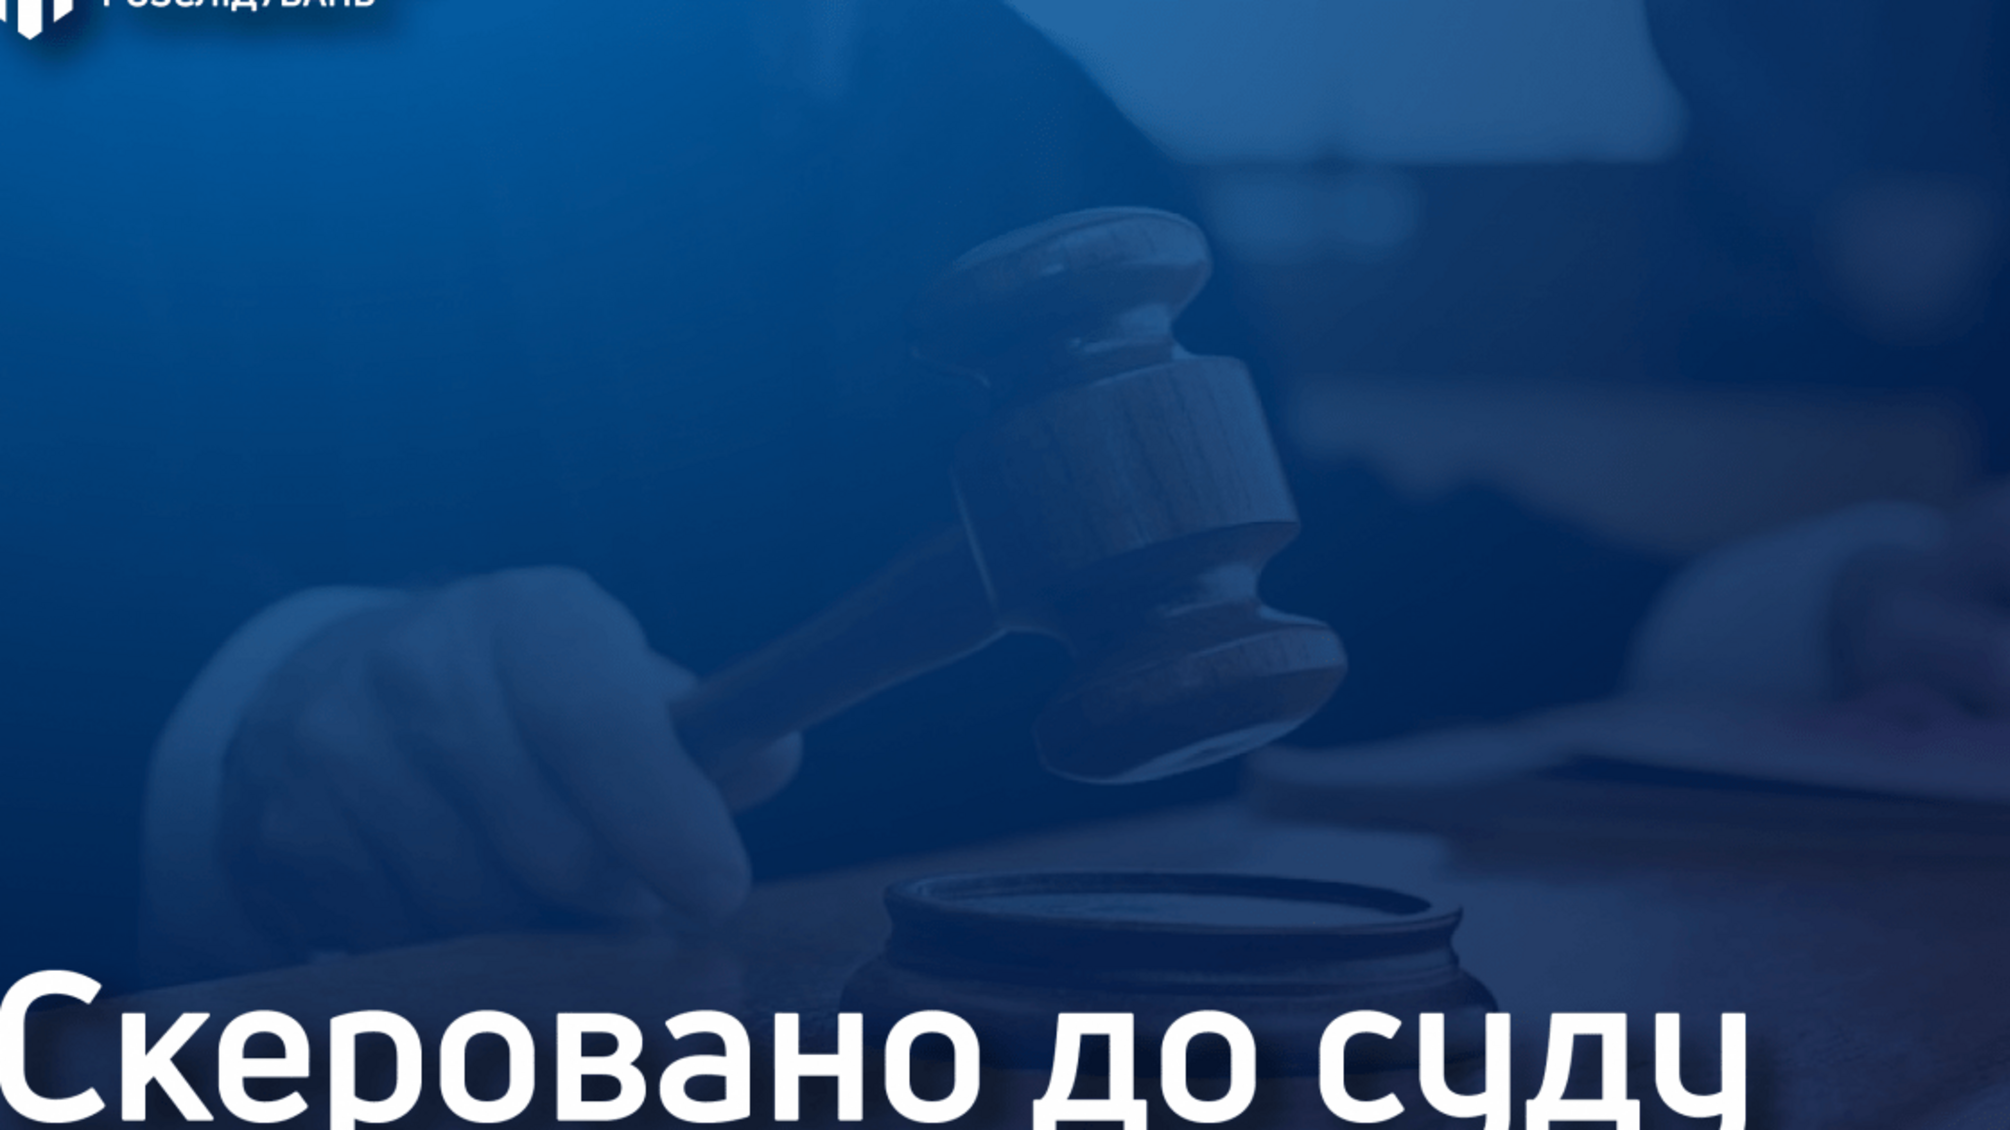 Спроба уникнення відповідальності за водіння напідпитку – посадовець Луганського лісомисливського господарства постане перед судом